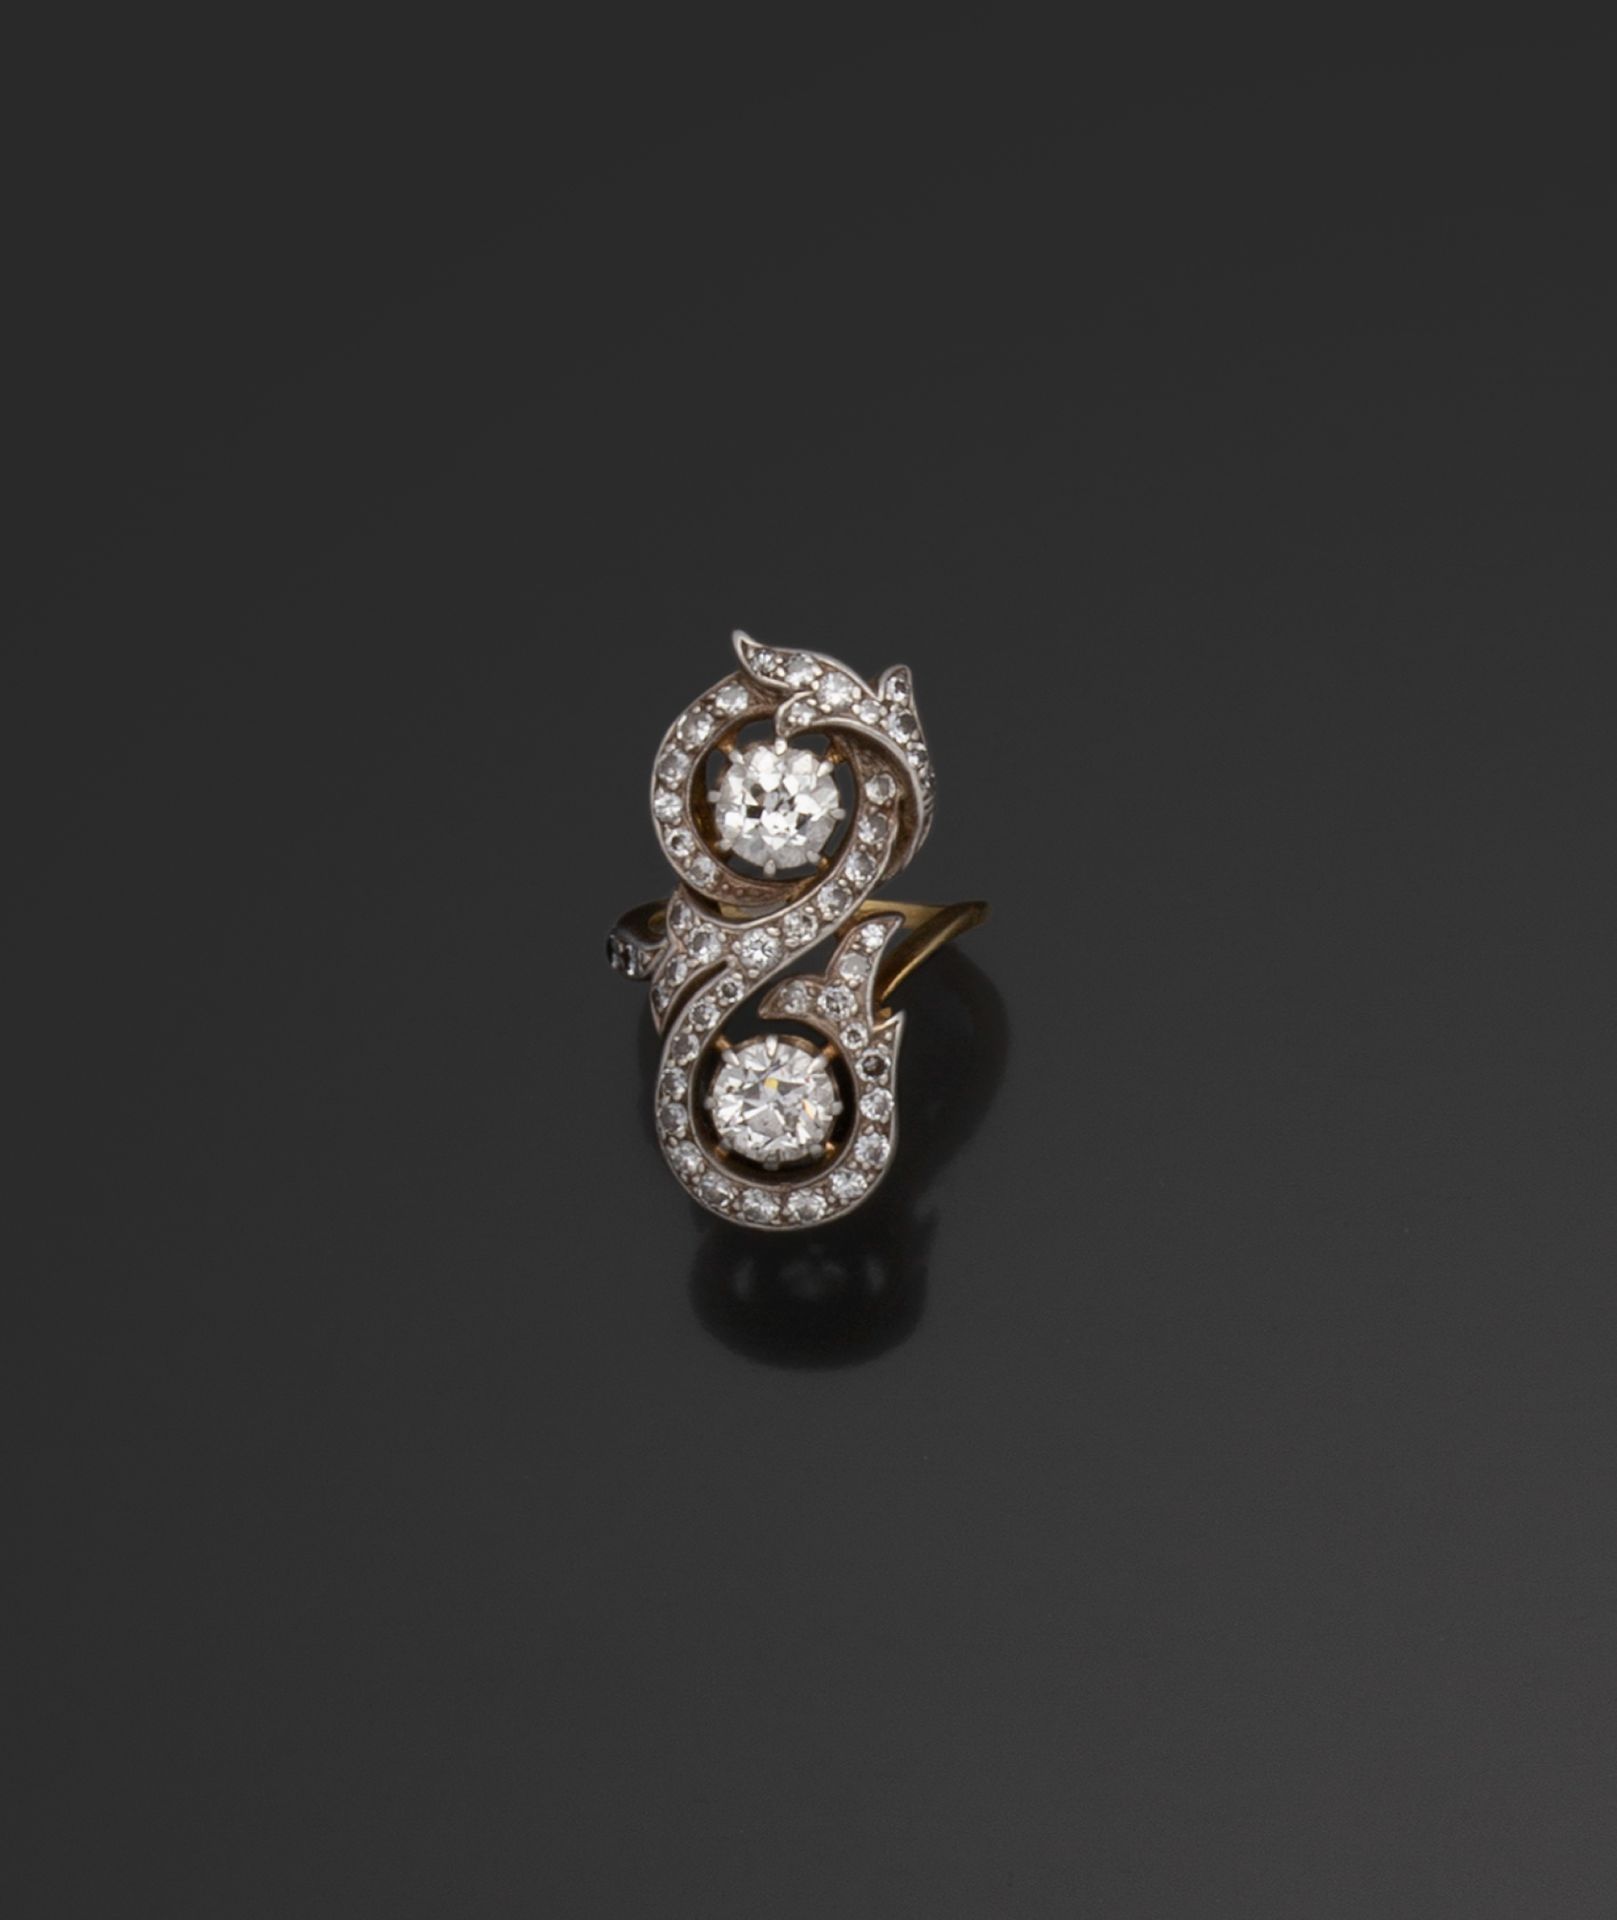 Null 一枚18K（750/1000）双色金戒指，在老式和8/8切割钻石的卷轴镶嵌中，镶嵌了两颗老式欧洲切割钻石，每颗重约0.90克拉。

手指大小：52 -&hellip;